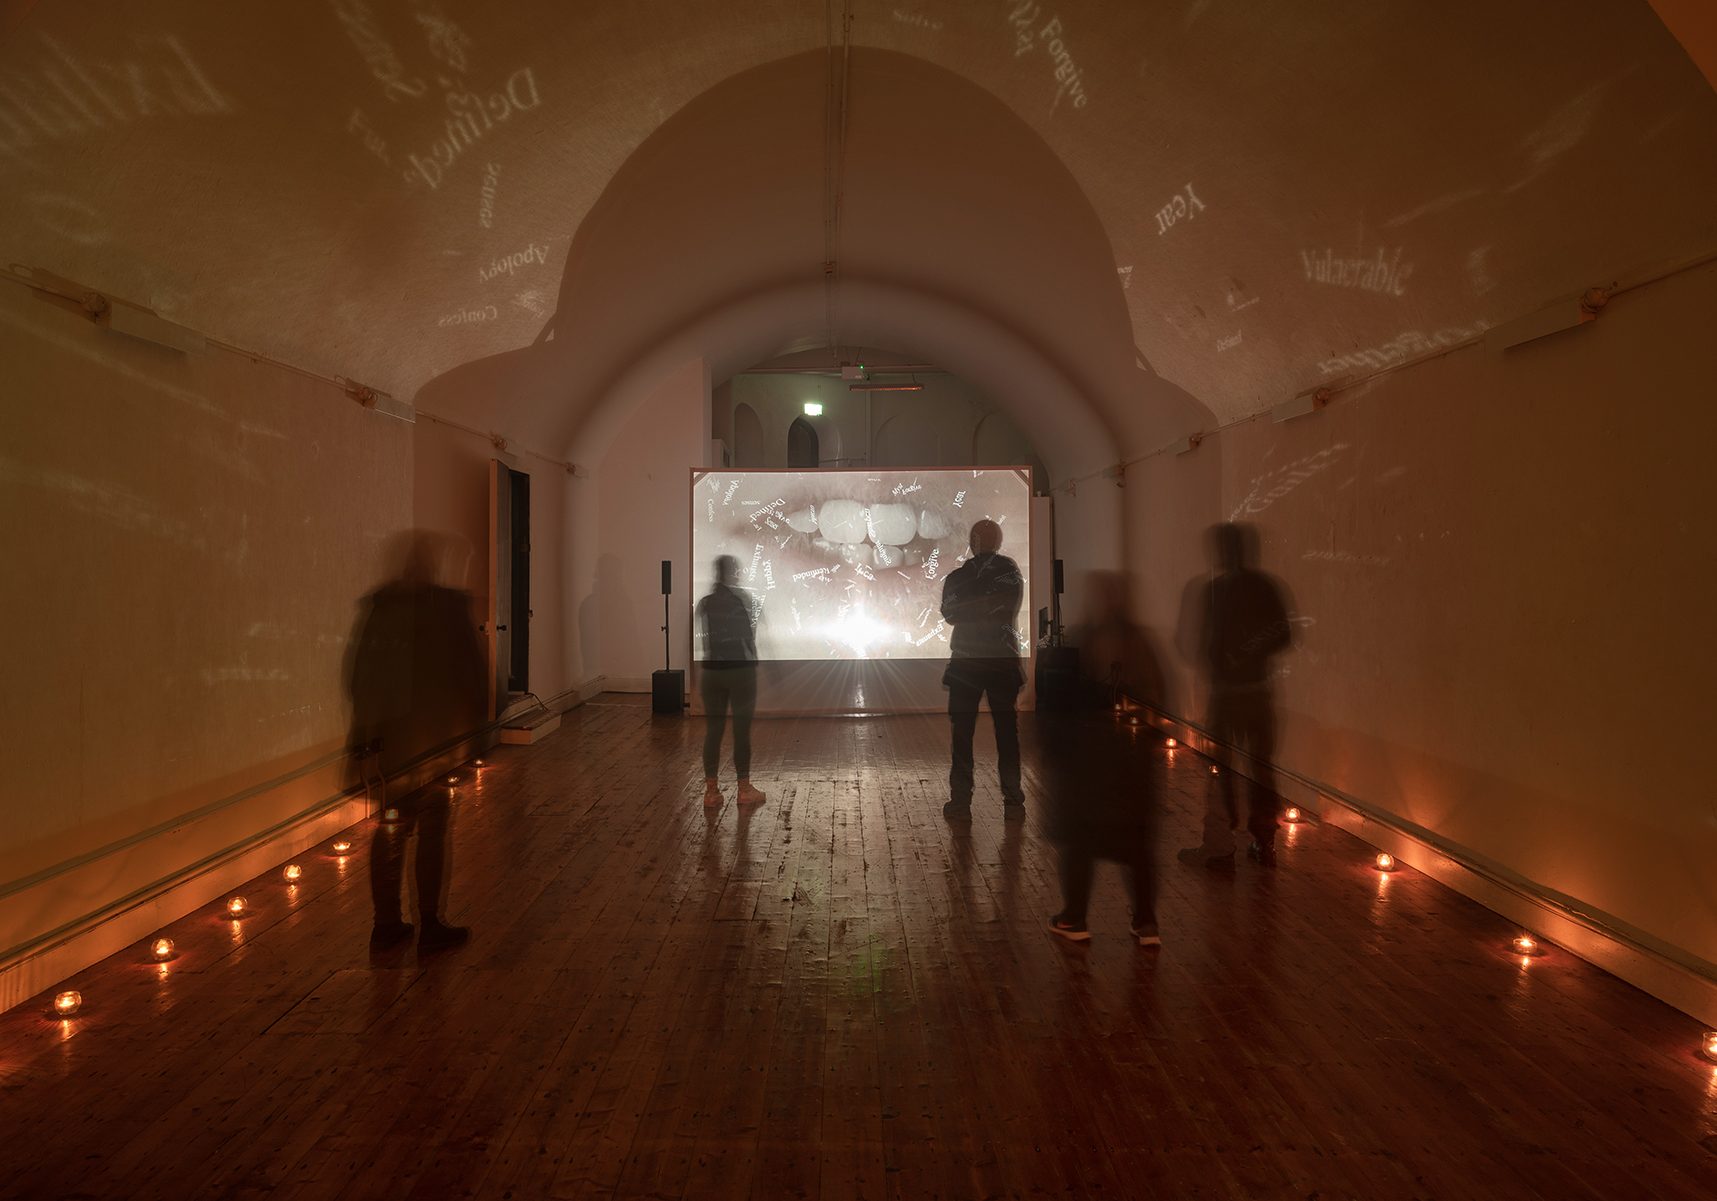 Sample Studios, 'Mystical Confessions' by Aoife Claffey, Cork, Ireland, 2021 / Photograph Jed Niezgoda - www.jedniezgoda.com